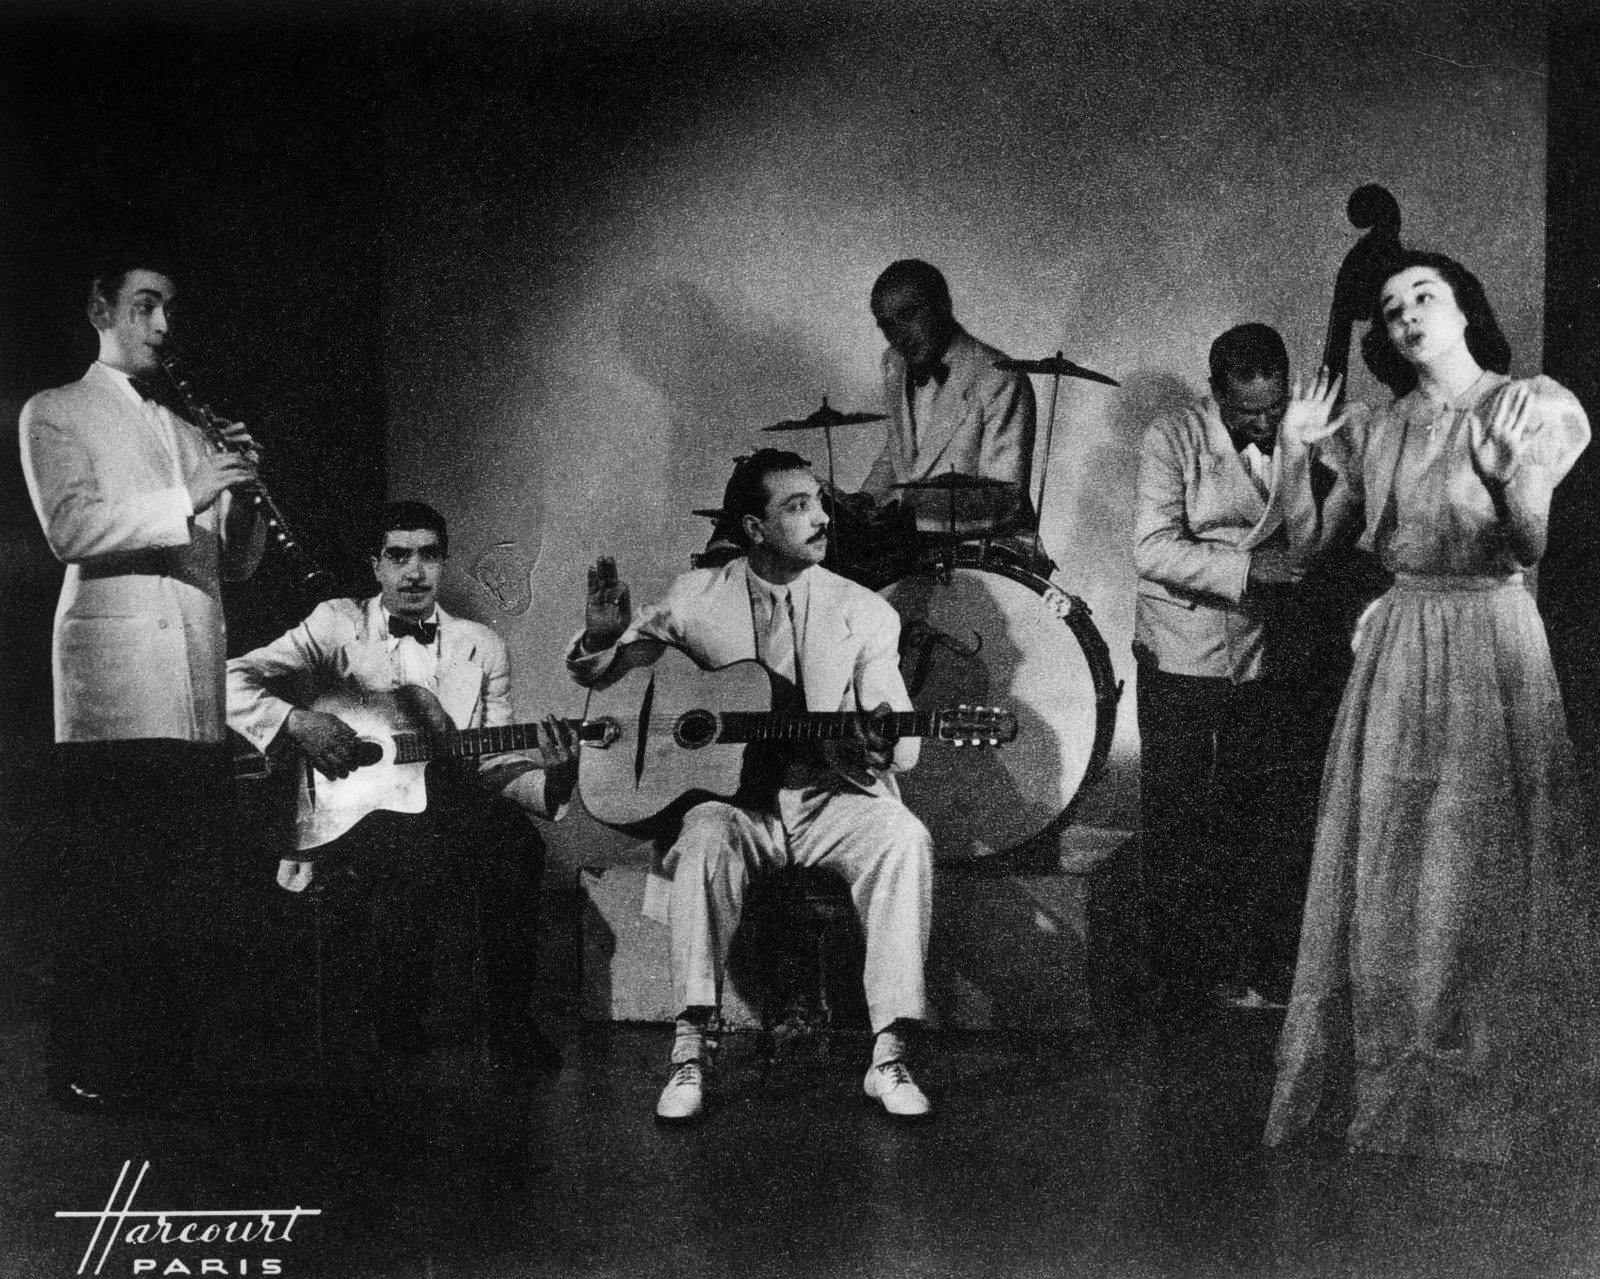 Django Reinhardt and his Nouveau Quintet